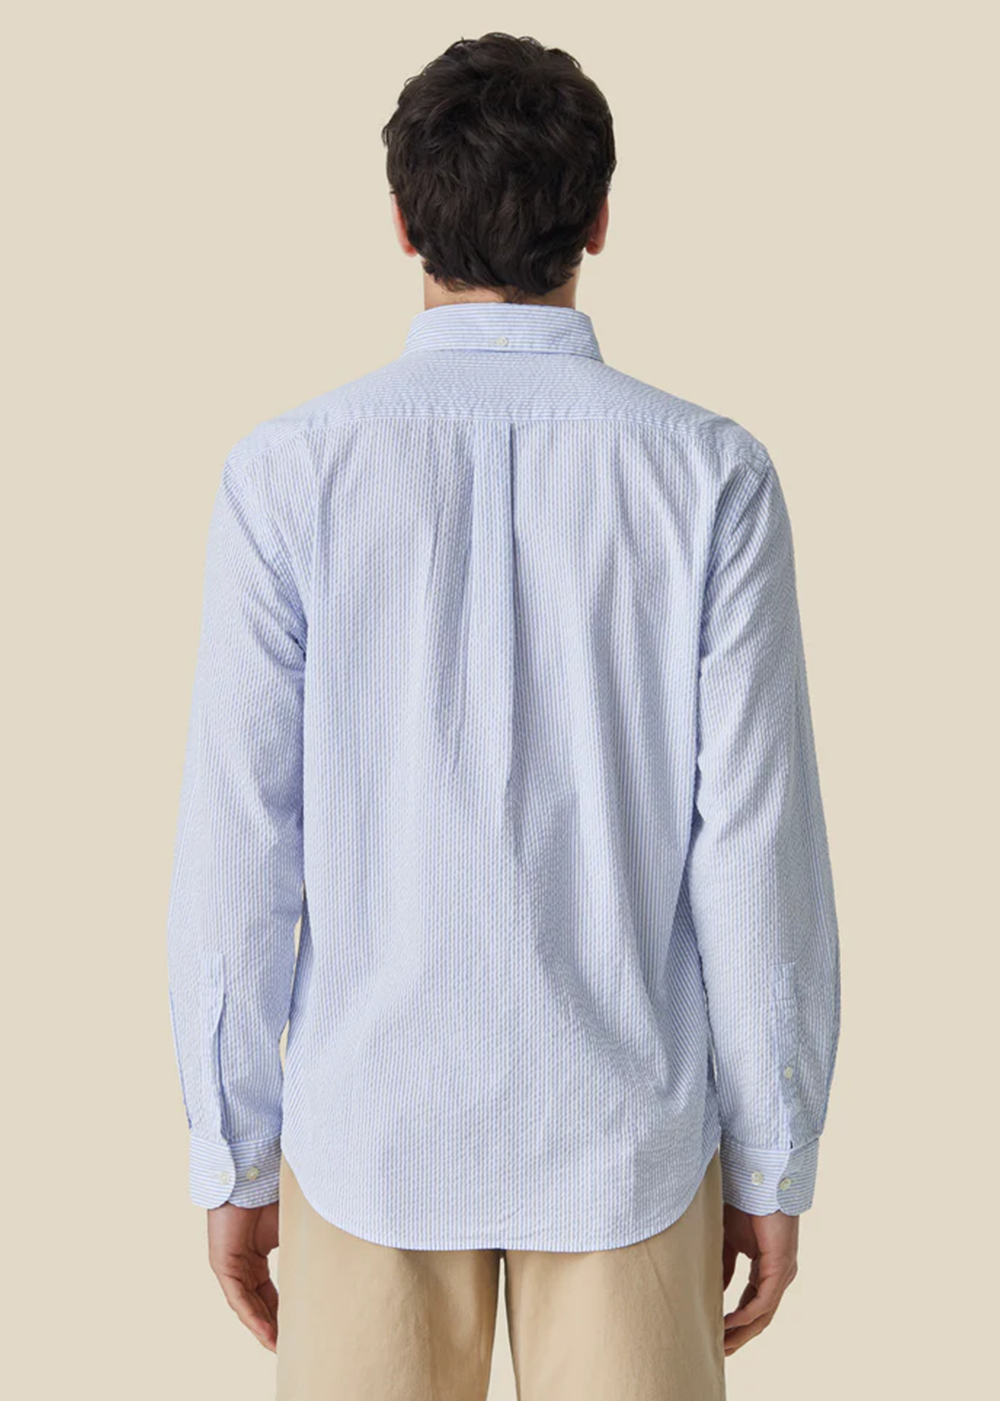 Atlantico Stripe Shirt - Blue - Portuguese Flannel Canada - Danali